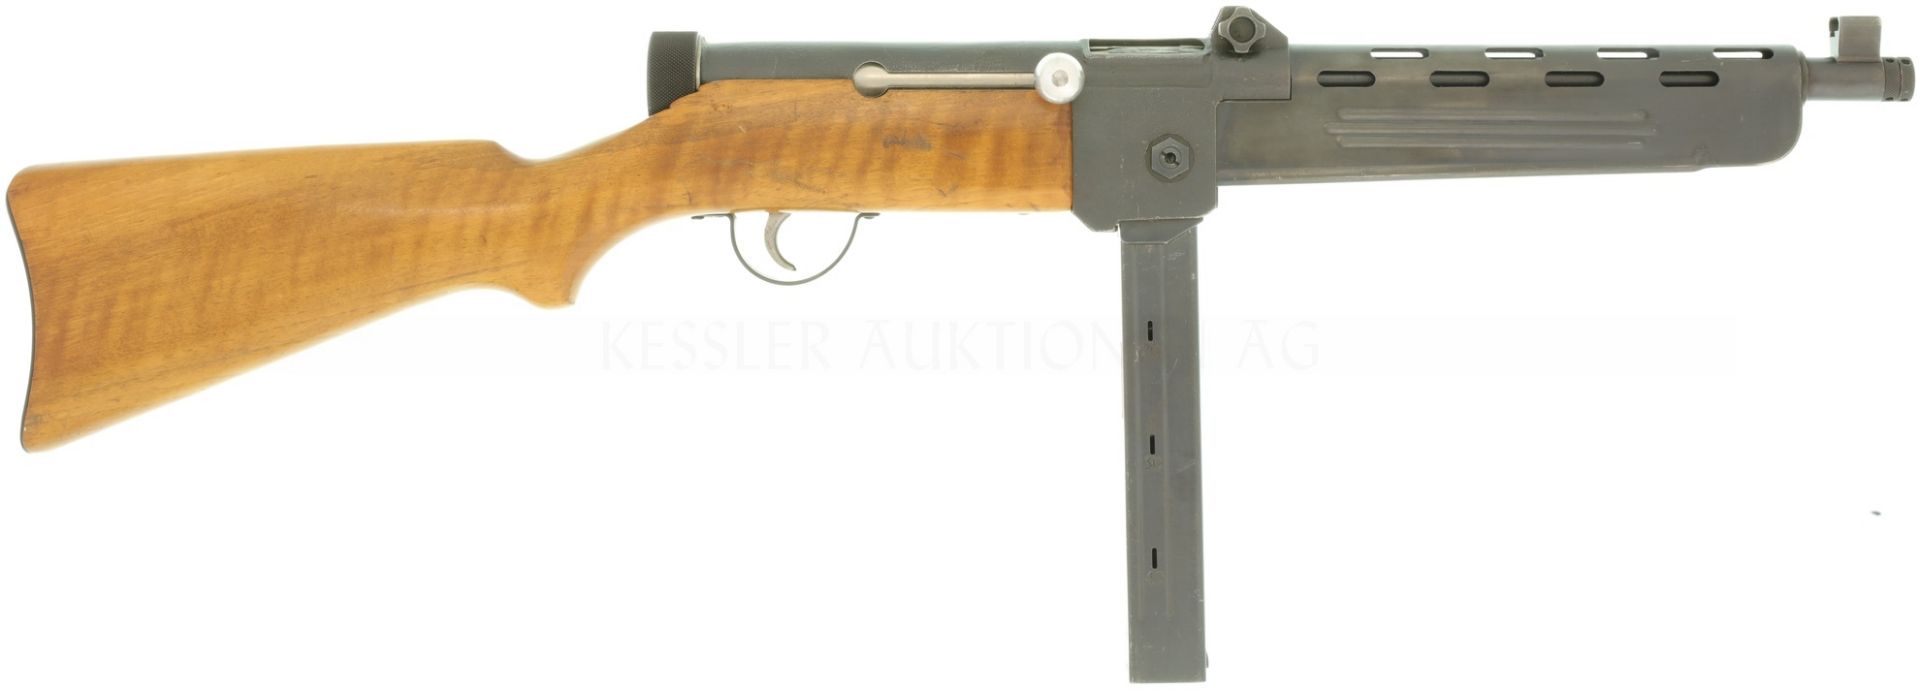 Maschinenpistole SIG MP46 Kal. 9mmP